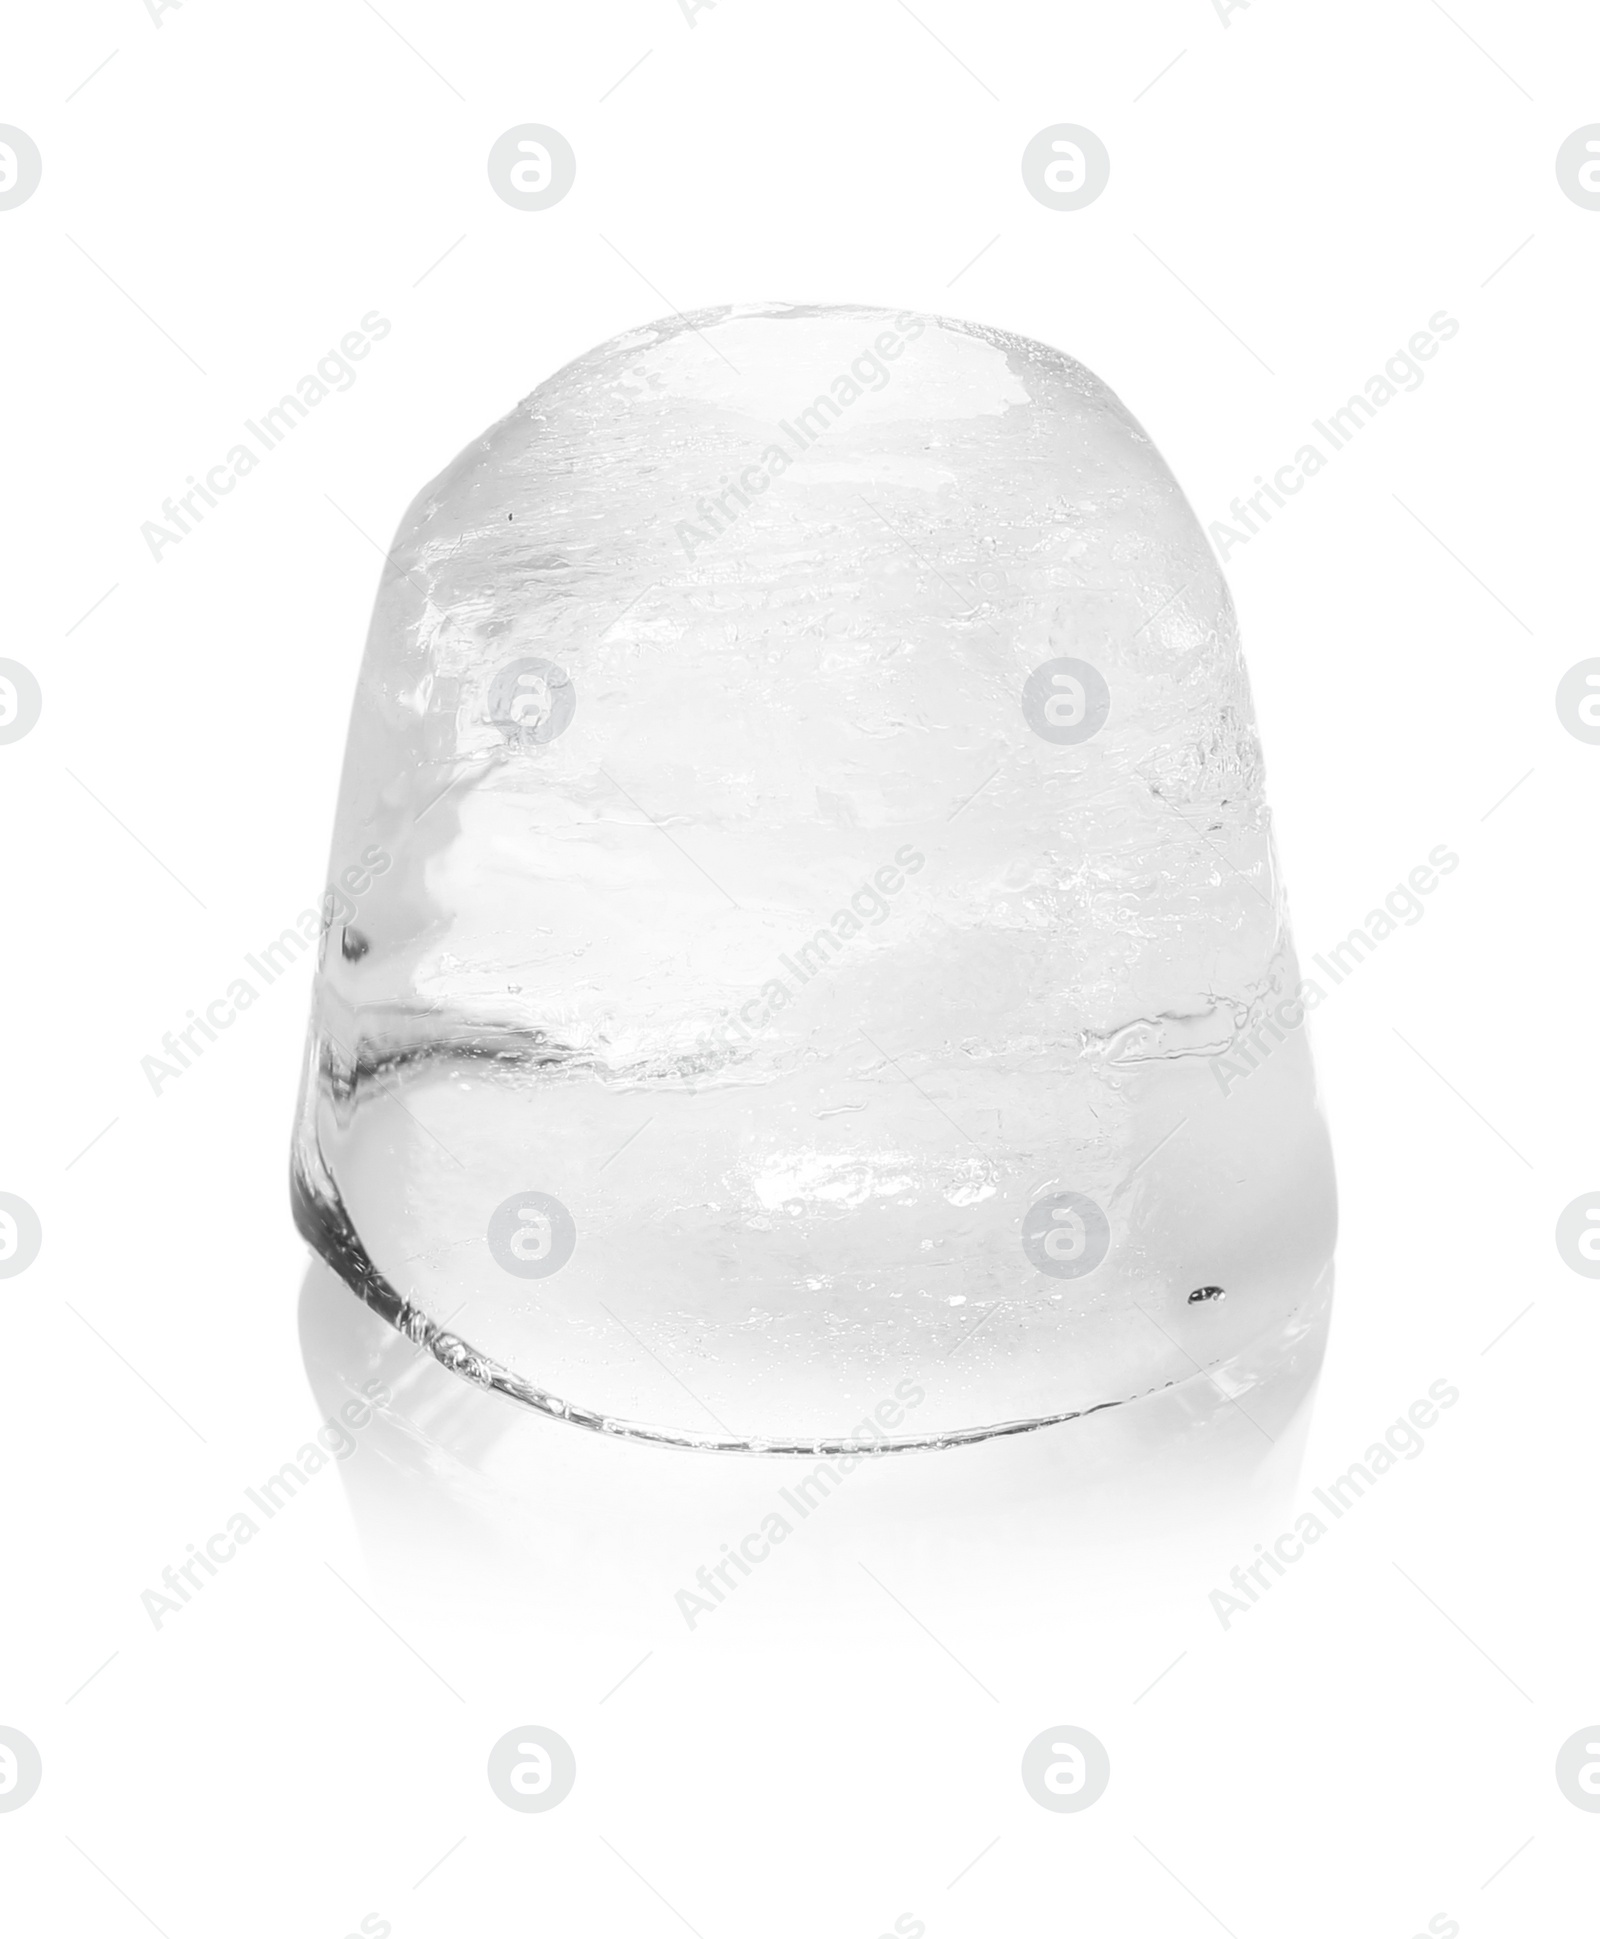 Photo of Piece of ice melting on white background